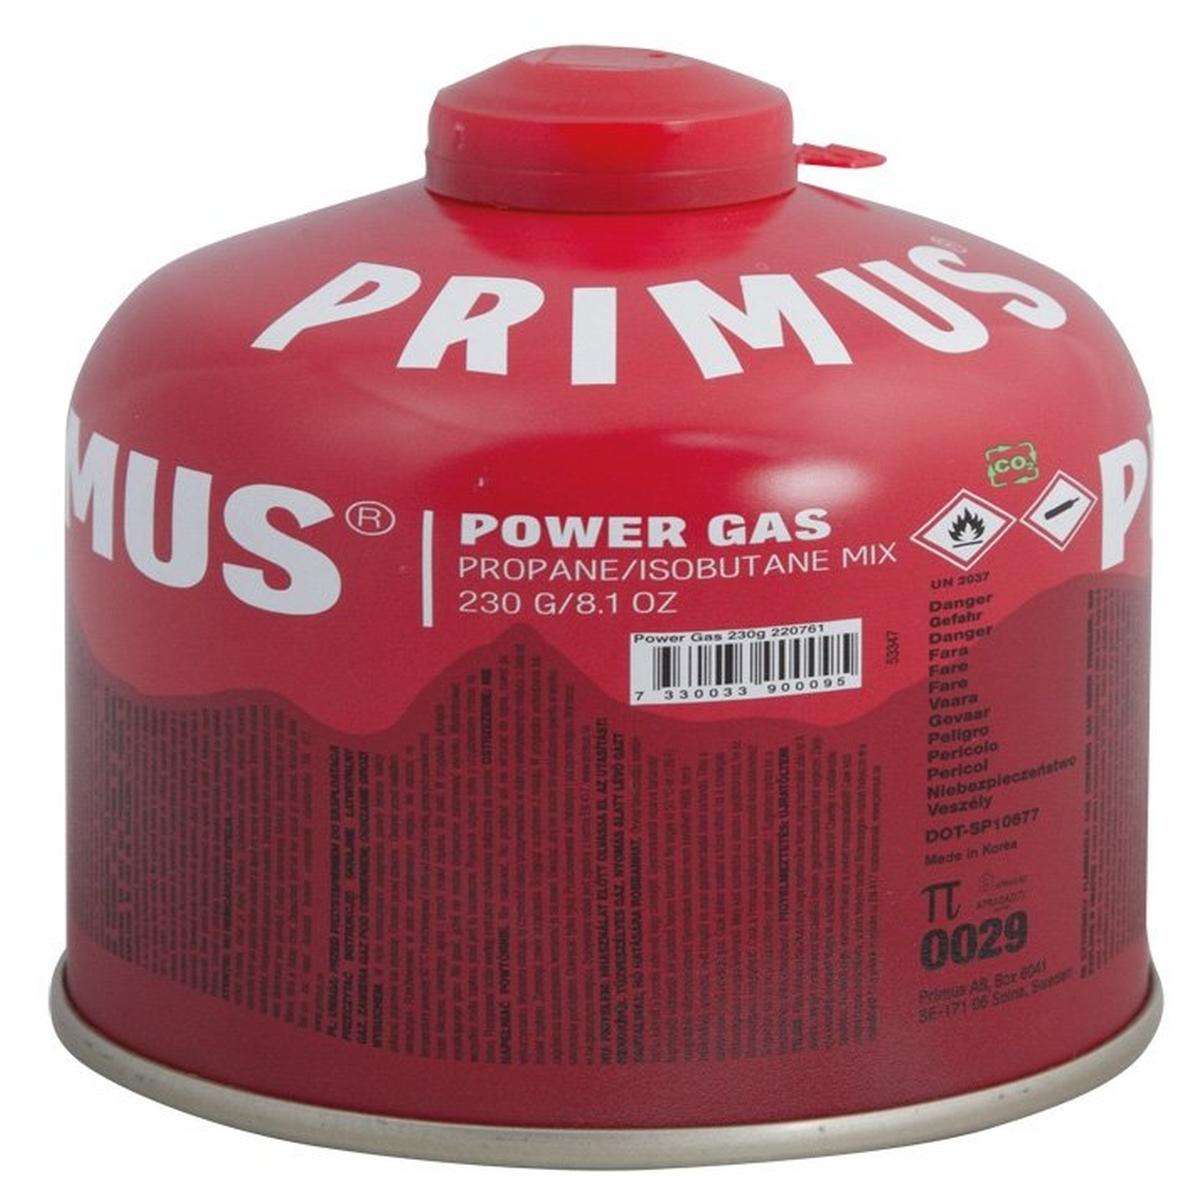 Primus Powergas 230g